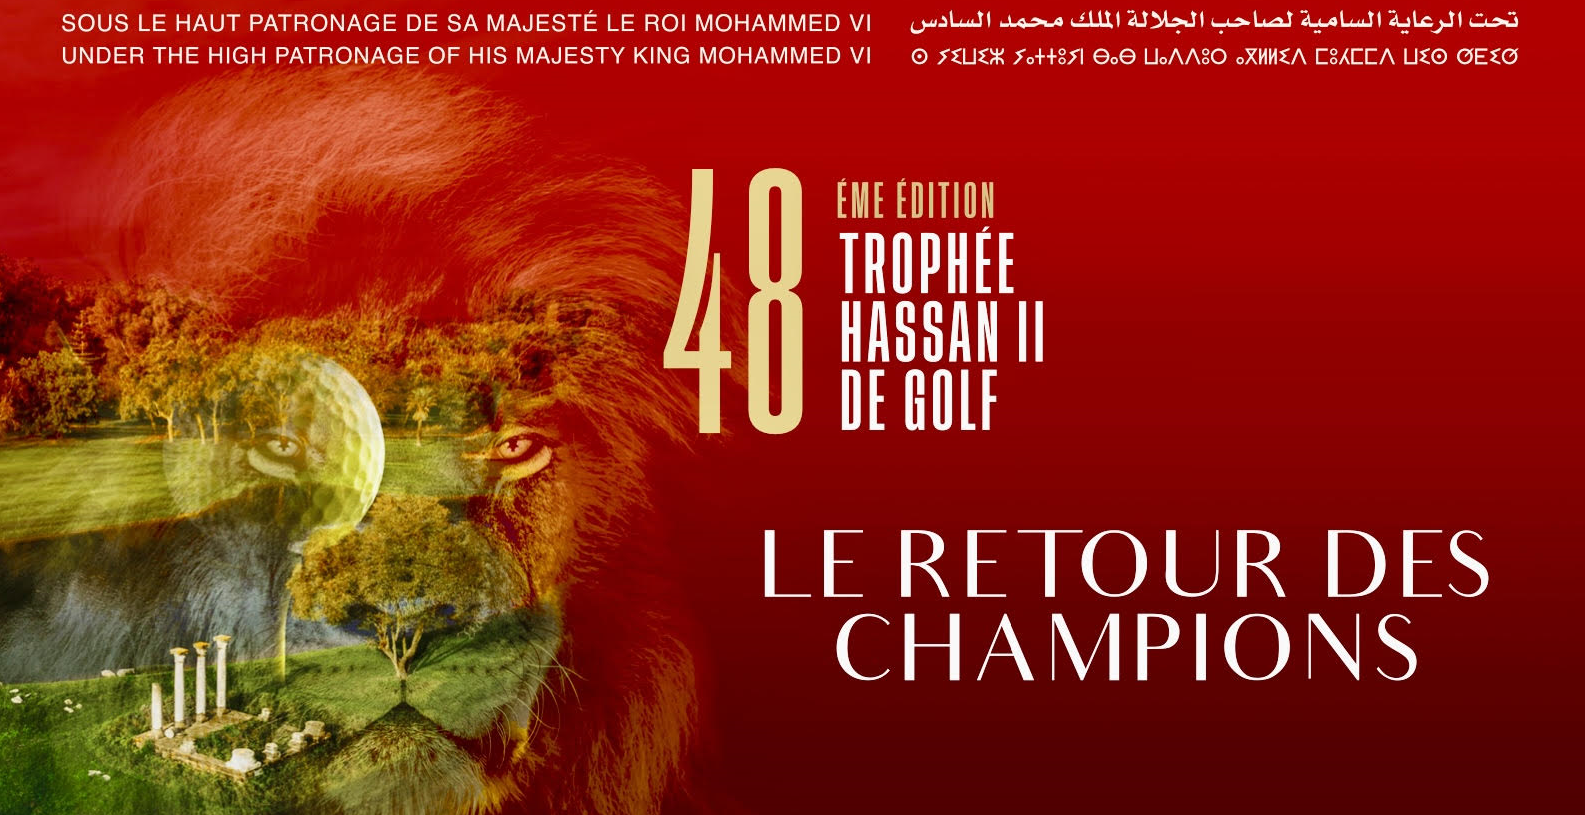 Trophée Hassan II : 48 ans d’excellence mondiale et de consécration du Maroc comme destination golfique de choix